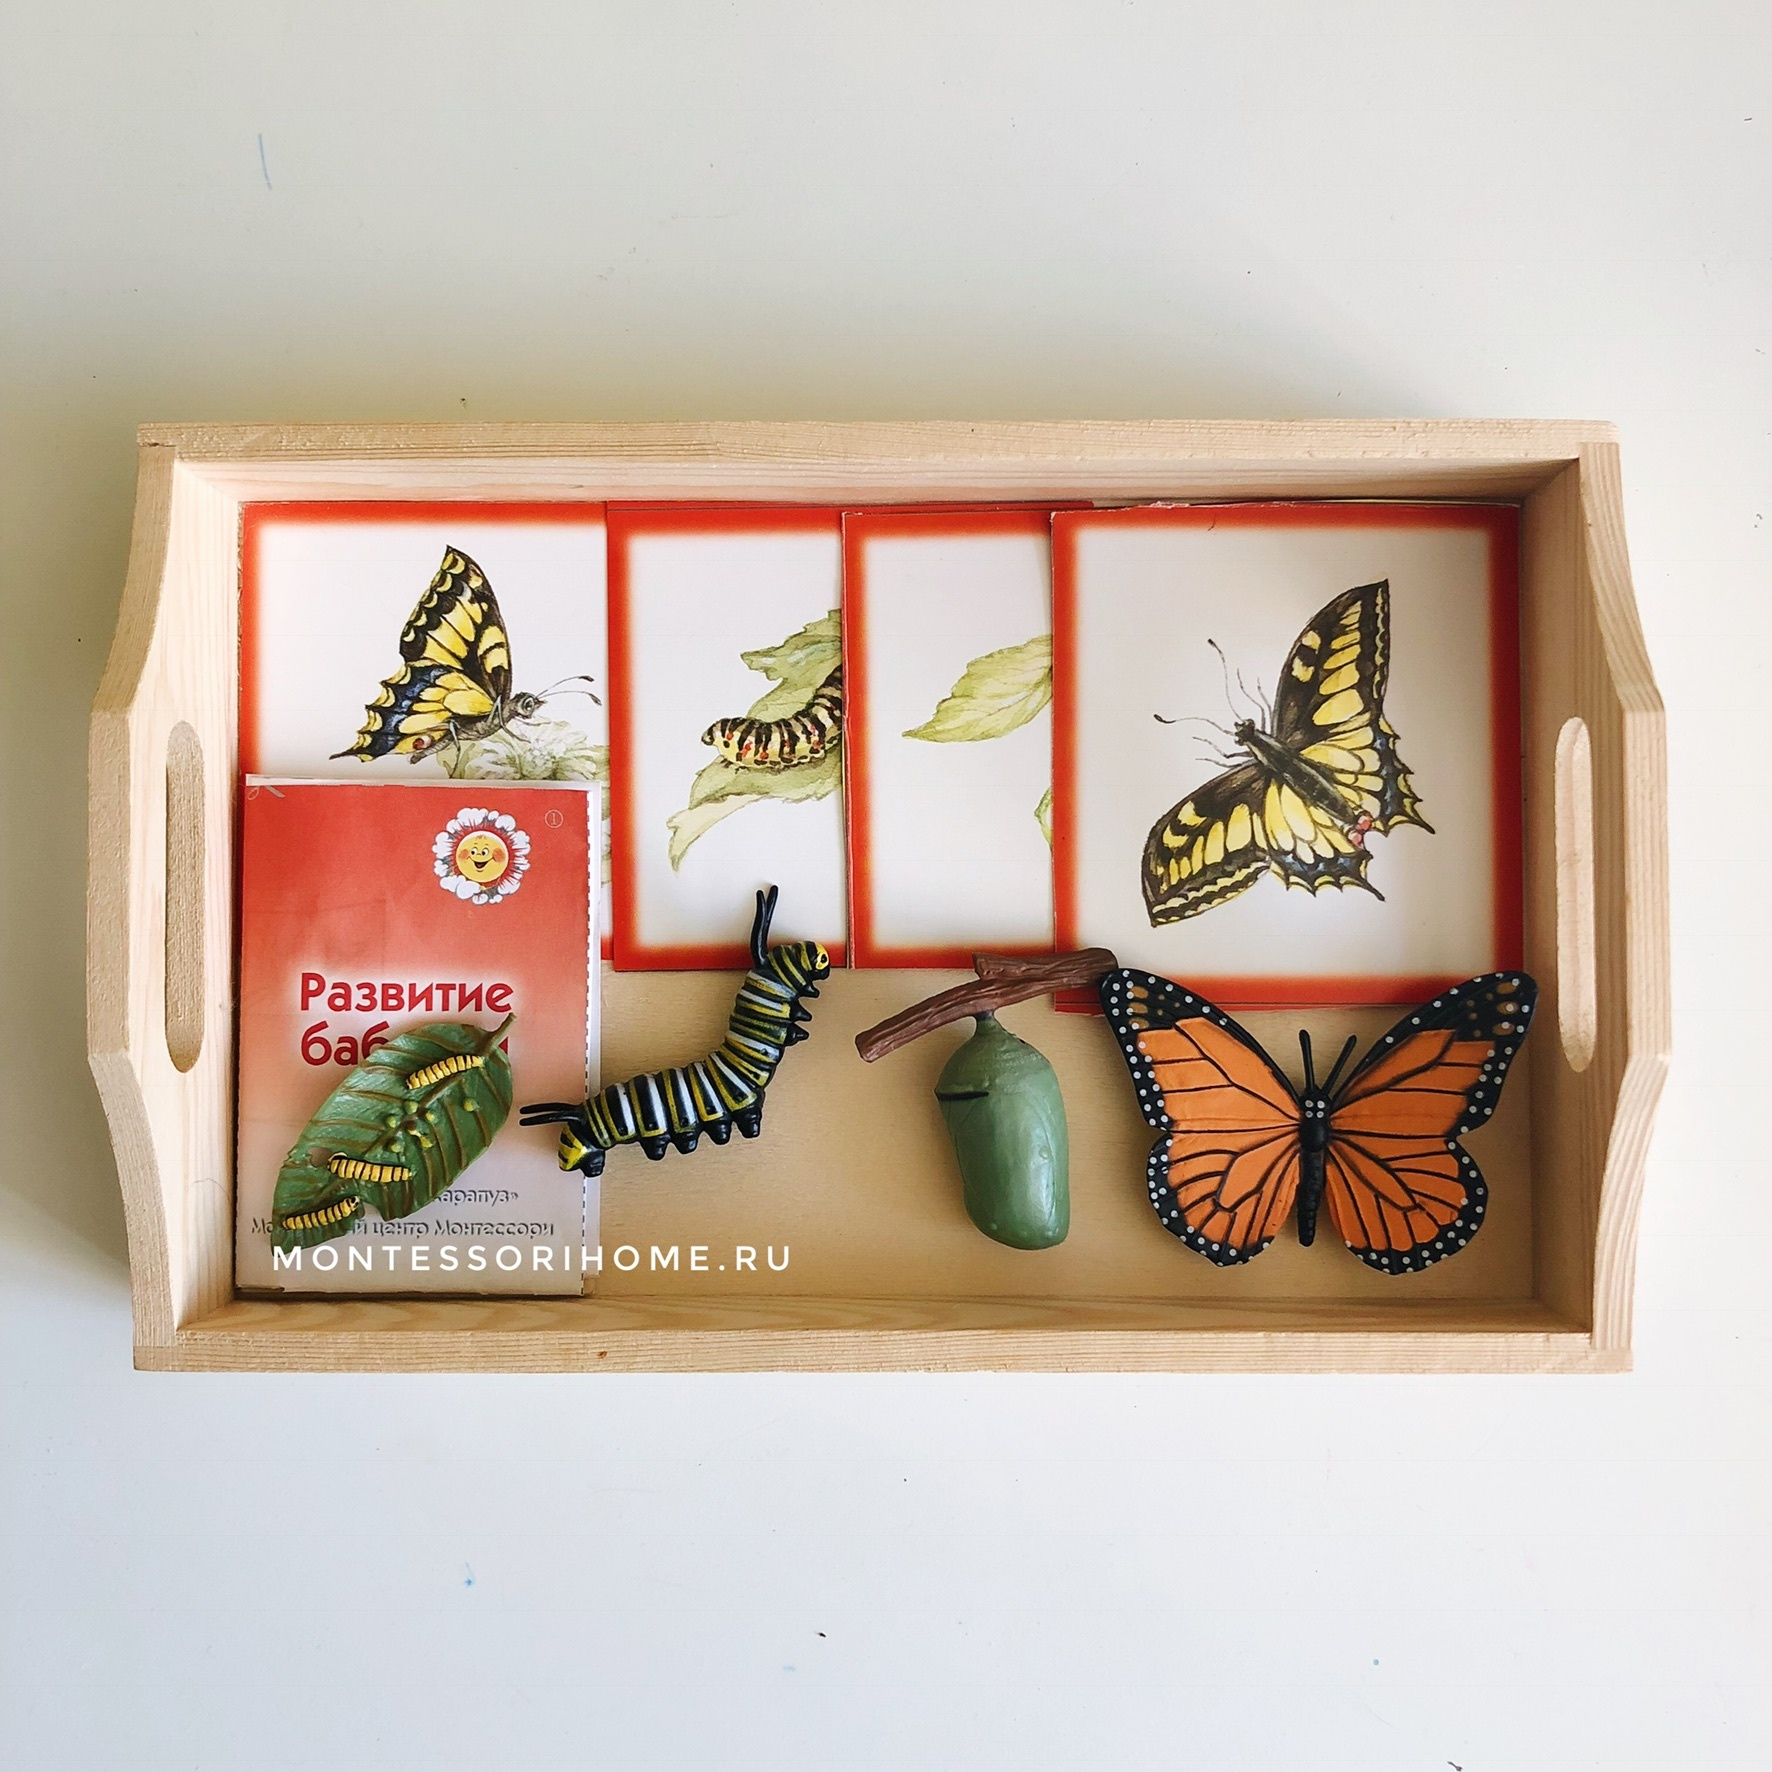 Набор фигурок Бабочка Монарх safari ltd купить детские игрушки в интернетмагазине Монтессори дома